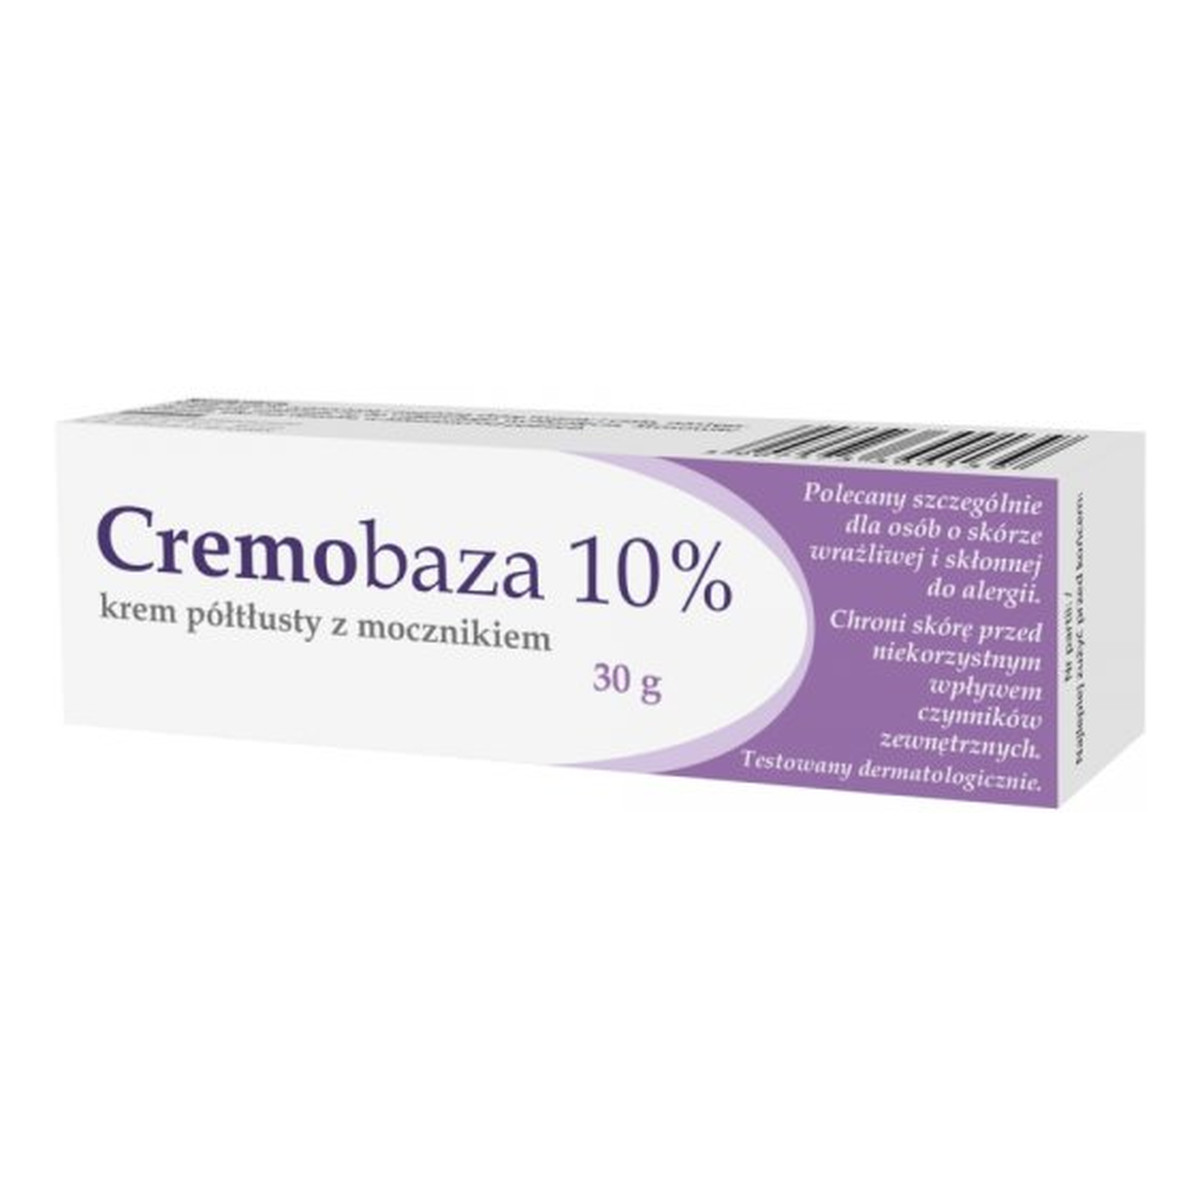 Cremobaza 10% Krem półtłusty z mocznikiem nawilżający skórę 30g